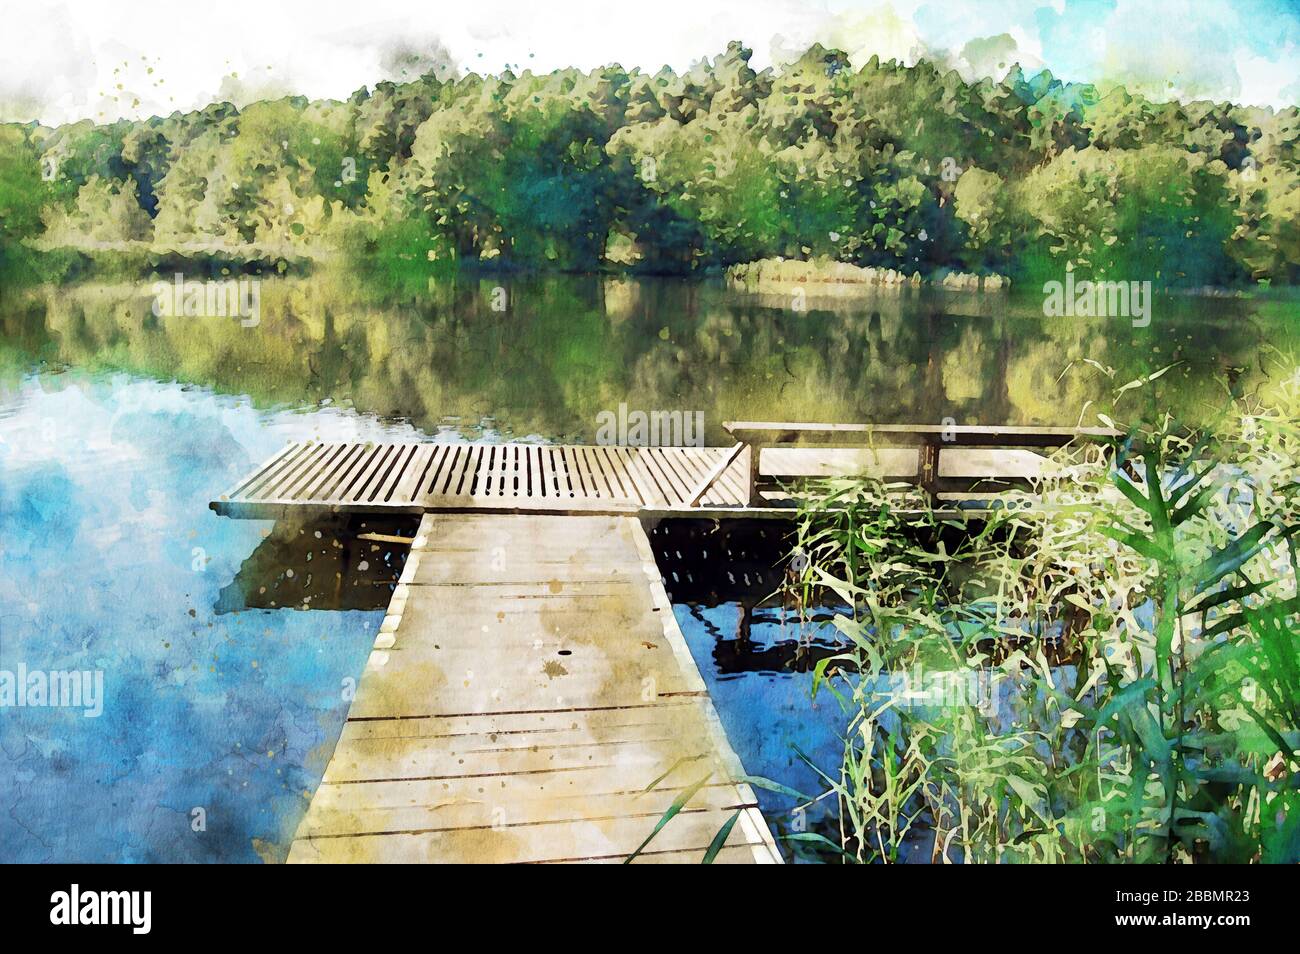 Peinture à l'aquarelle de piere dans l'eau d'un lac de Brandebourg en Allemagne. Forêt en arrière-plan. Banque D'Images